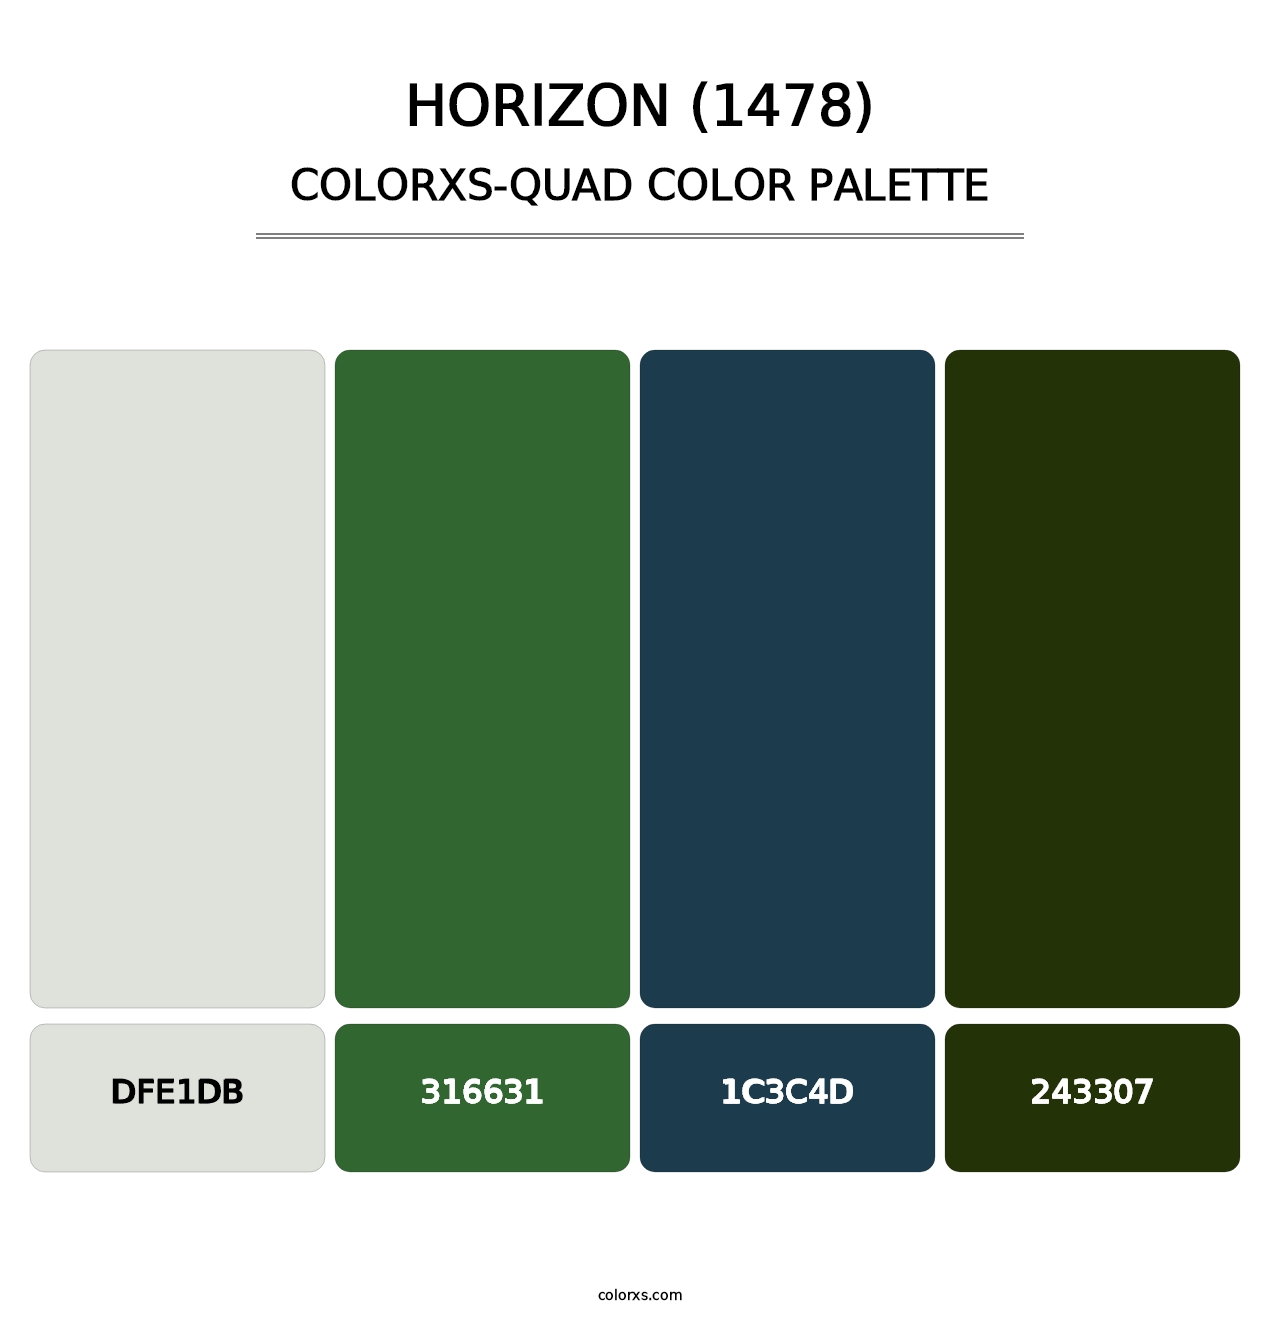 Horizon (1478) - Colorxs Quad Palette